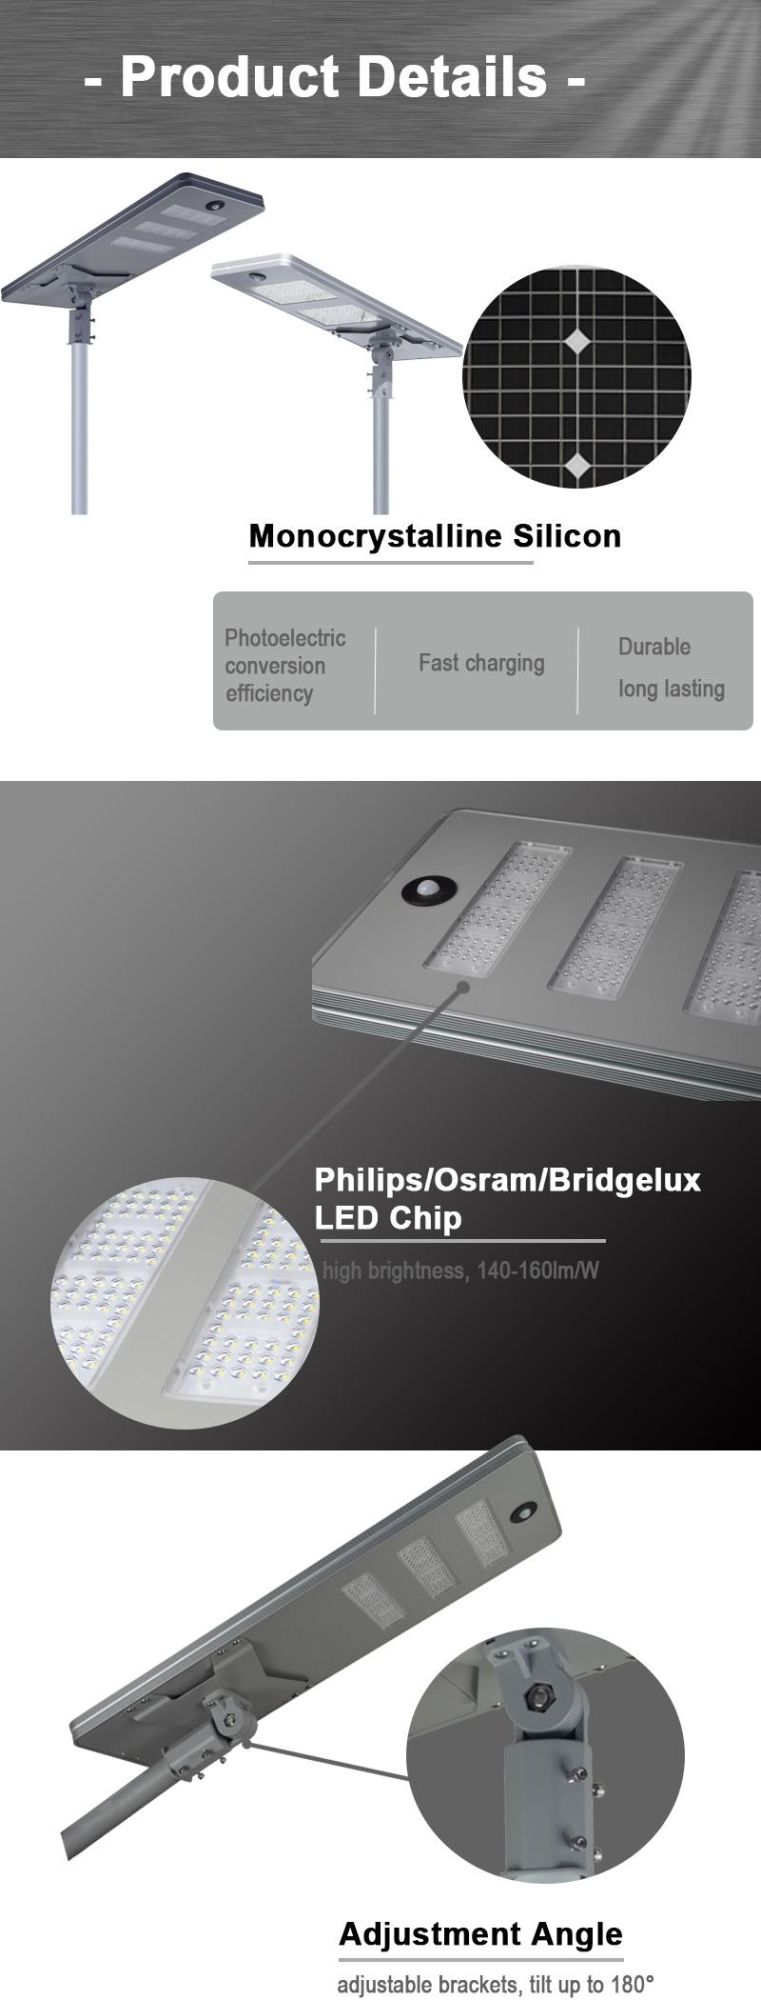 150watts High Power/Brightness/Lumens Street Lamp Cover LED Solar Garden Light